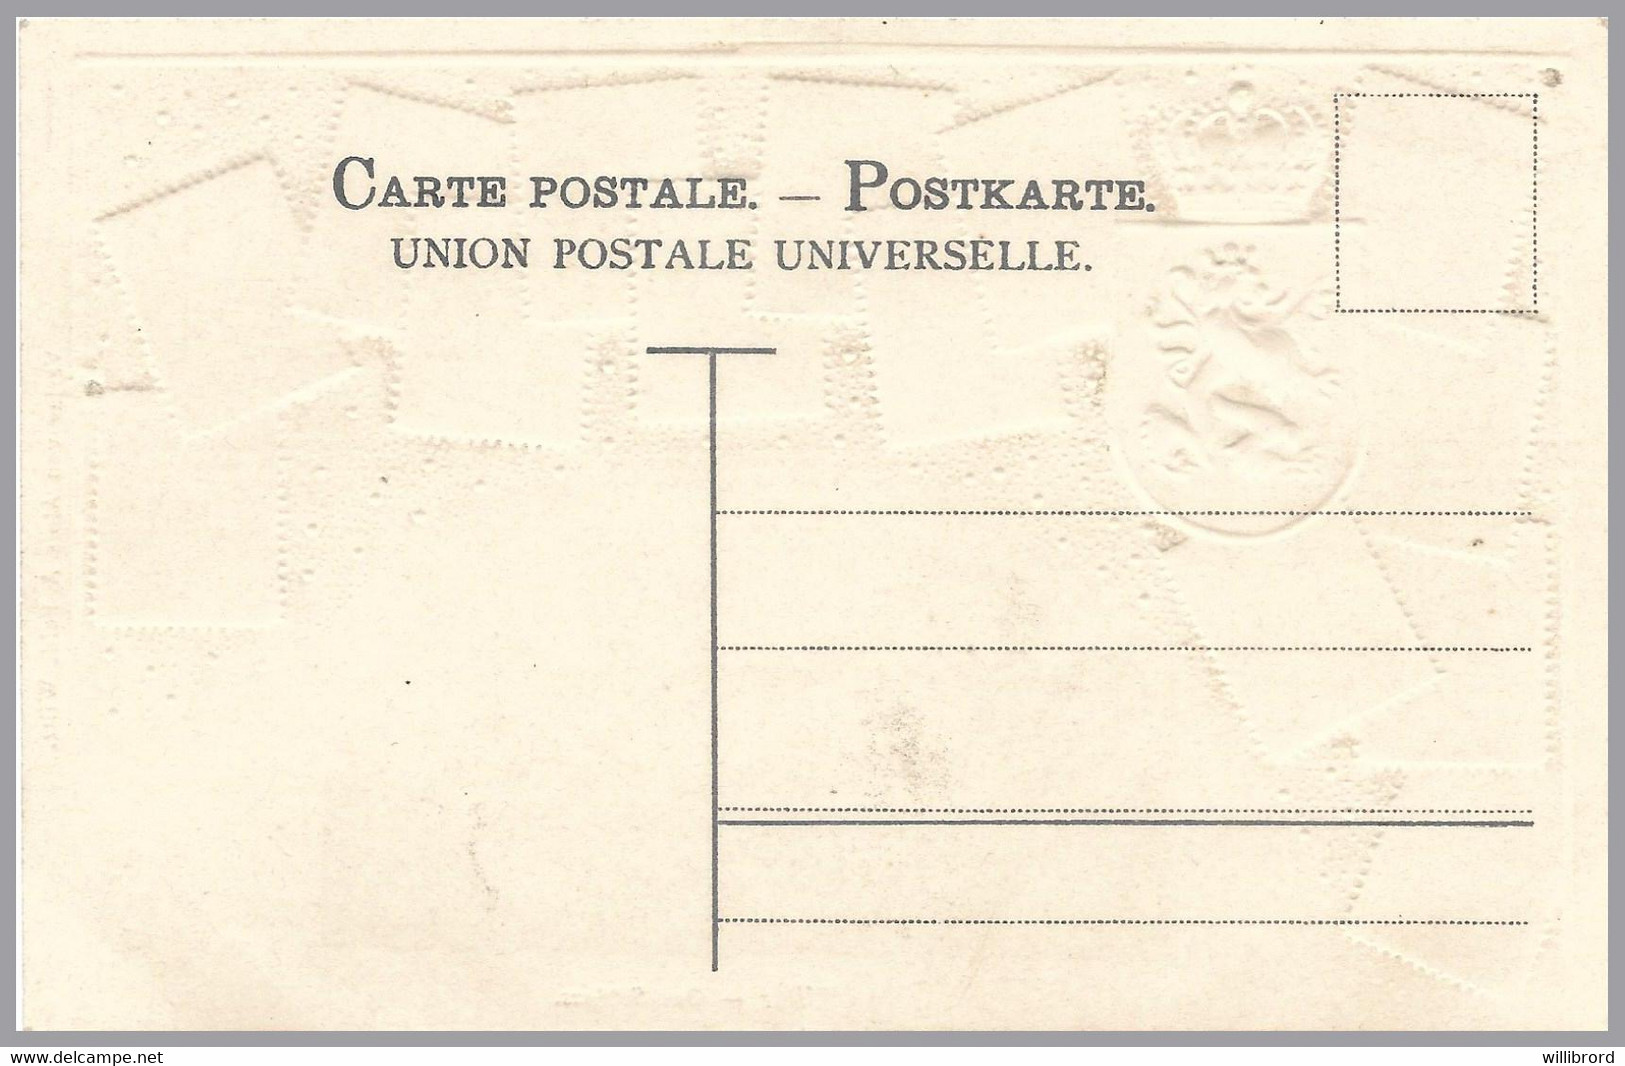 LUXEMBOURG - Zieher Stampcard - Wiltz View - Unused - Pristine Colors - 1891 Adolphe Voorzijde